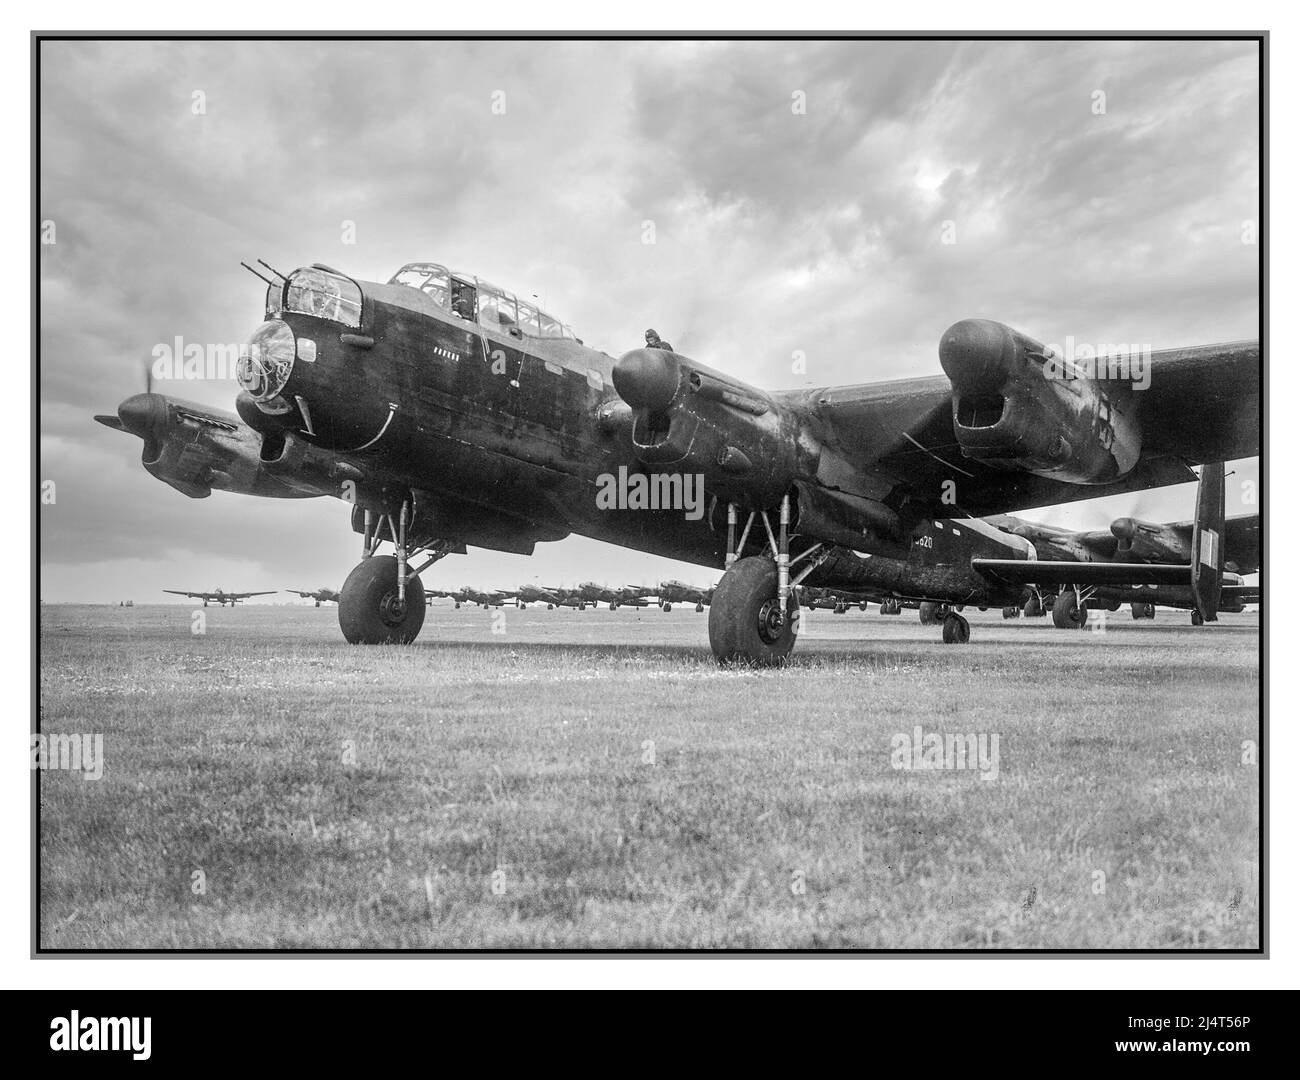 WW2 LANCASTER BOMBER RAF Royal Air Force Bomber Command, 1942-1945. Avro Lancaster B Mark I, R5620 'OL-H', de l'escadron no 83 RAF, en tête de la file d'attente d'avions attendant de décoller de Scampton, Lincolnshire, lors du célèbre RAID 'mille bombardier' à Brême, Allemagne nazie. R5620, piloté par l'officier de pilotage J R Farrow & Crew, le seul avion perdu par l'escadron cette nuit-là. Deuxième Guerre mondiale Seconde Guerre mondiale WW2 juin 1942 Banque D'Images